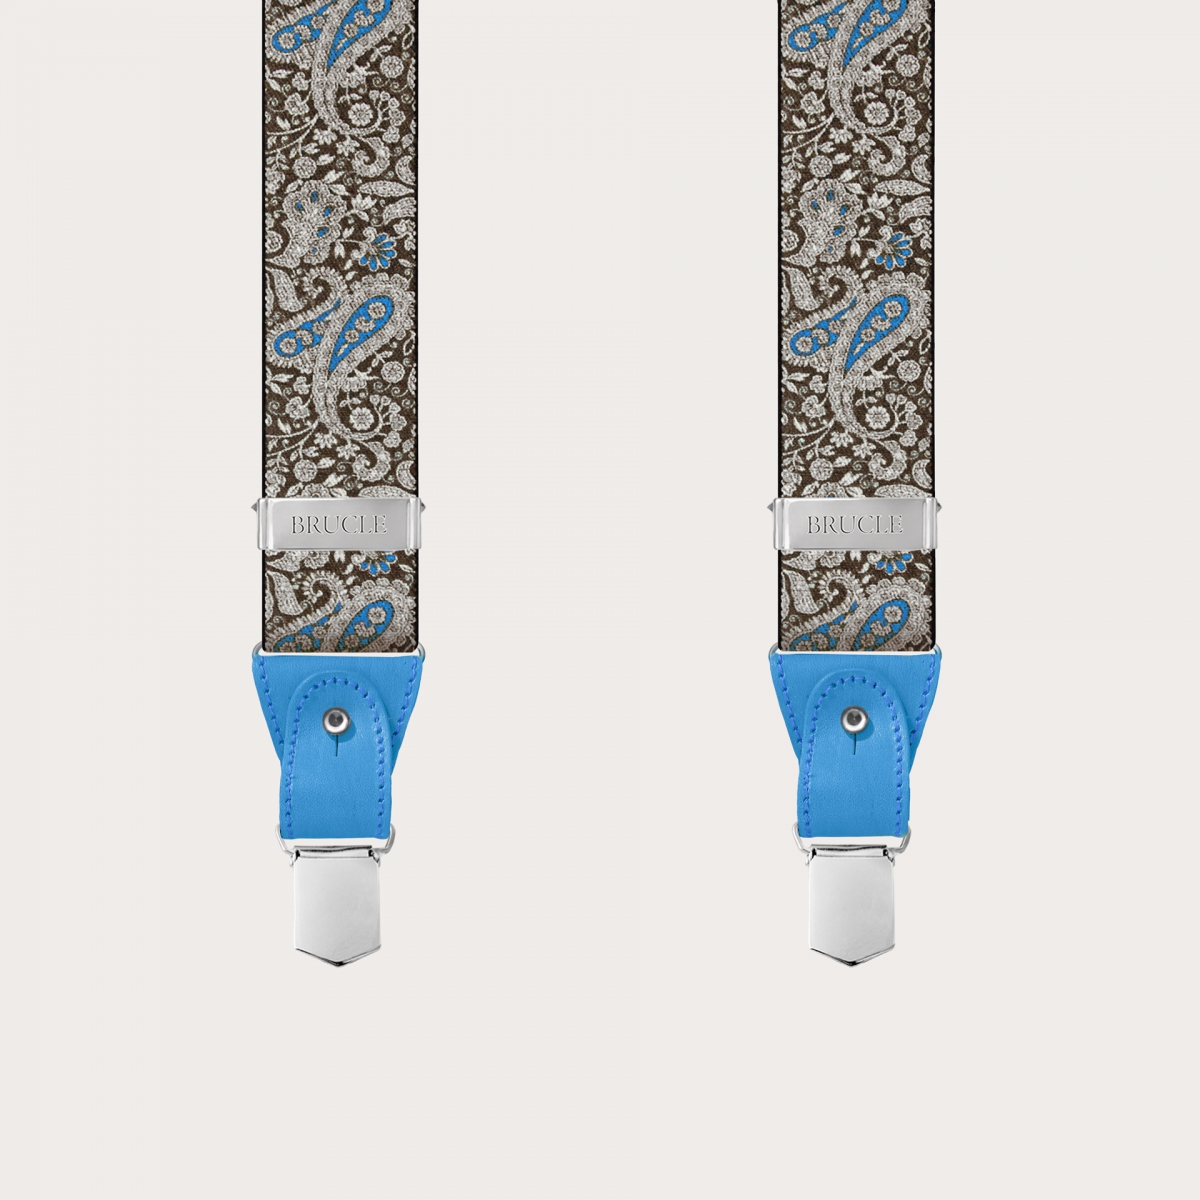 BRUCLE Doppelte Hosenträger in braunem und blauem Kaschmirmuster